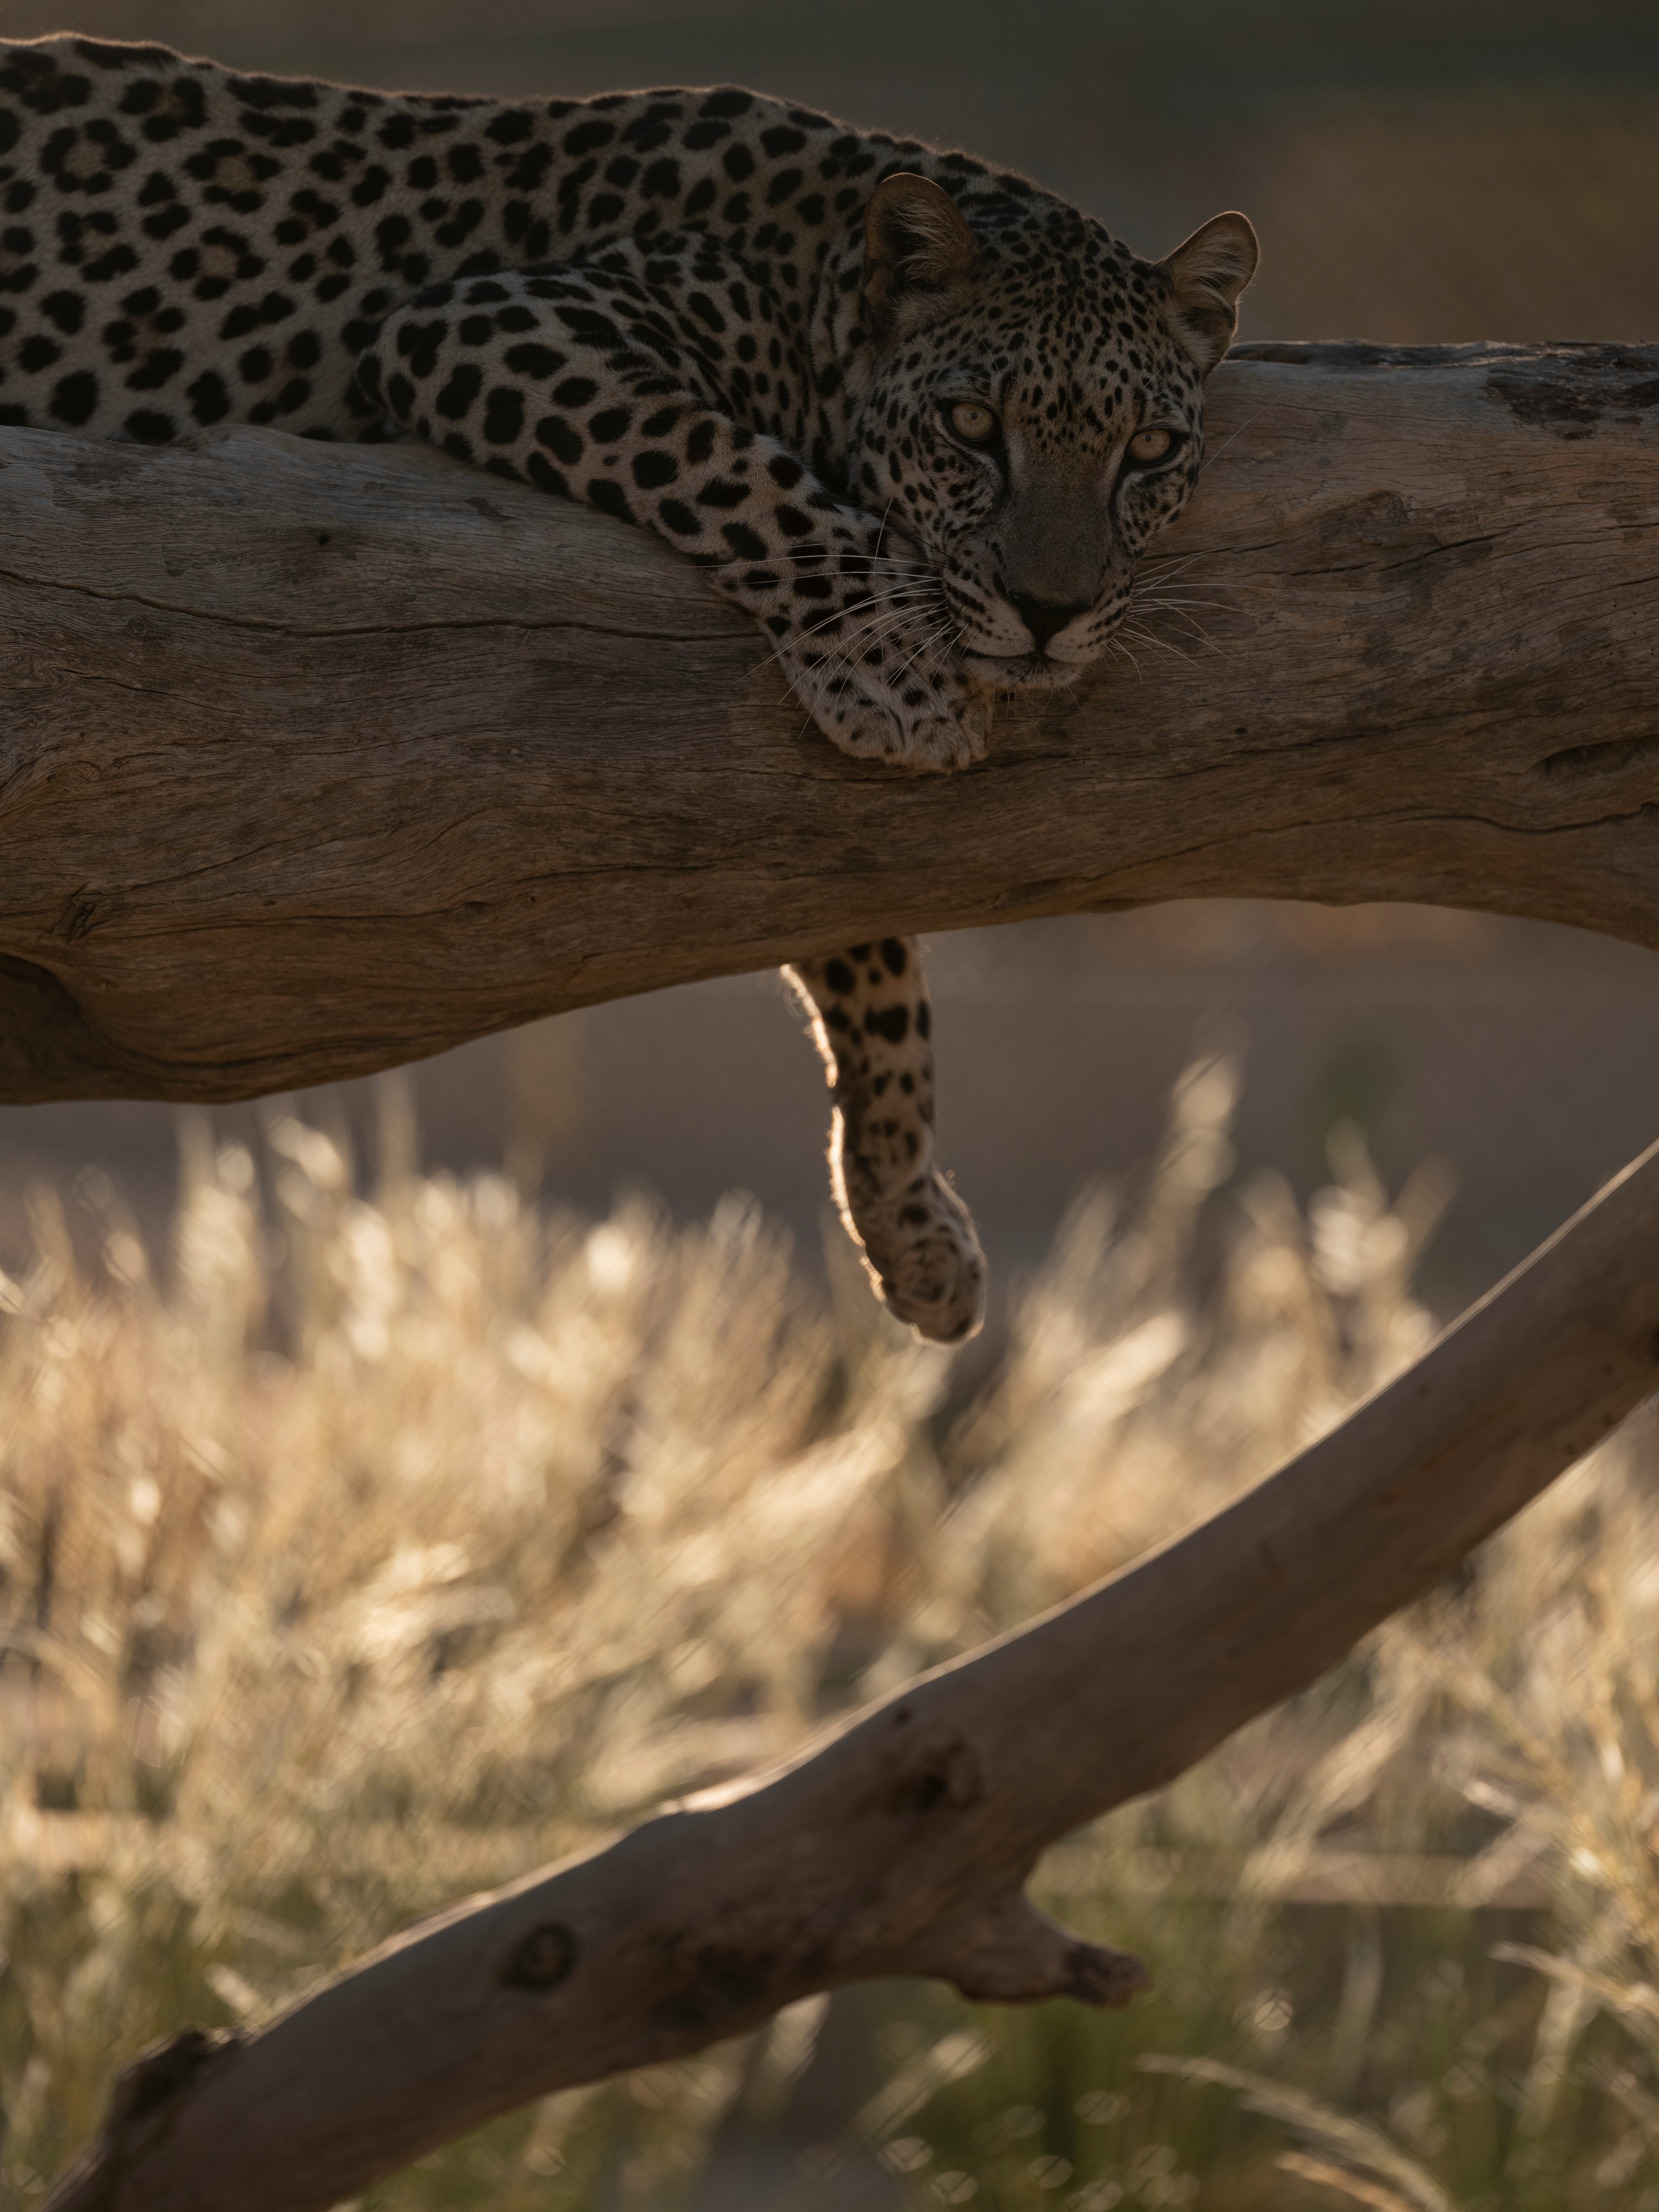 An Arabian leopard relaxes in a tree